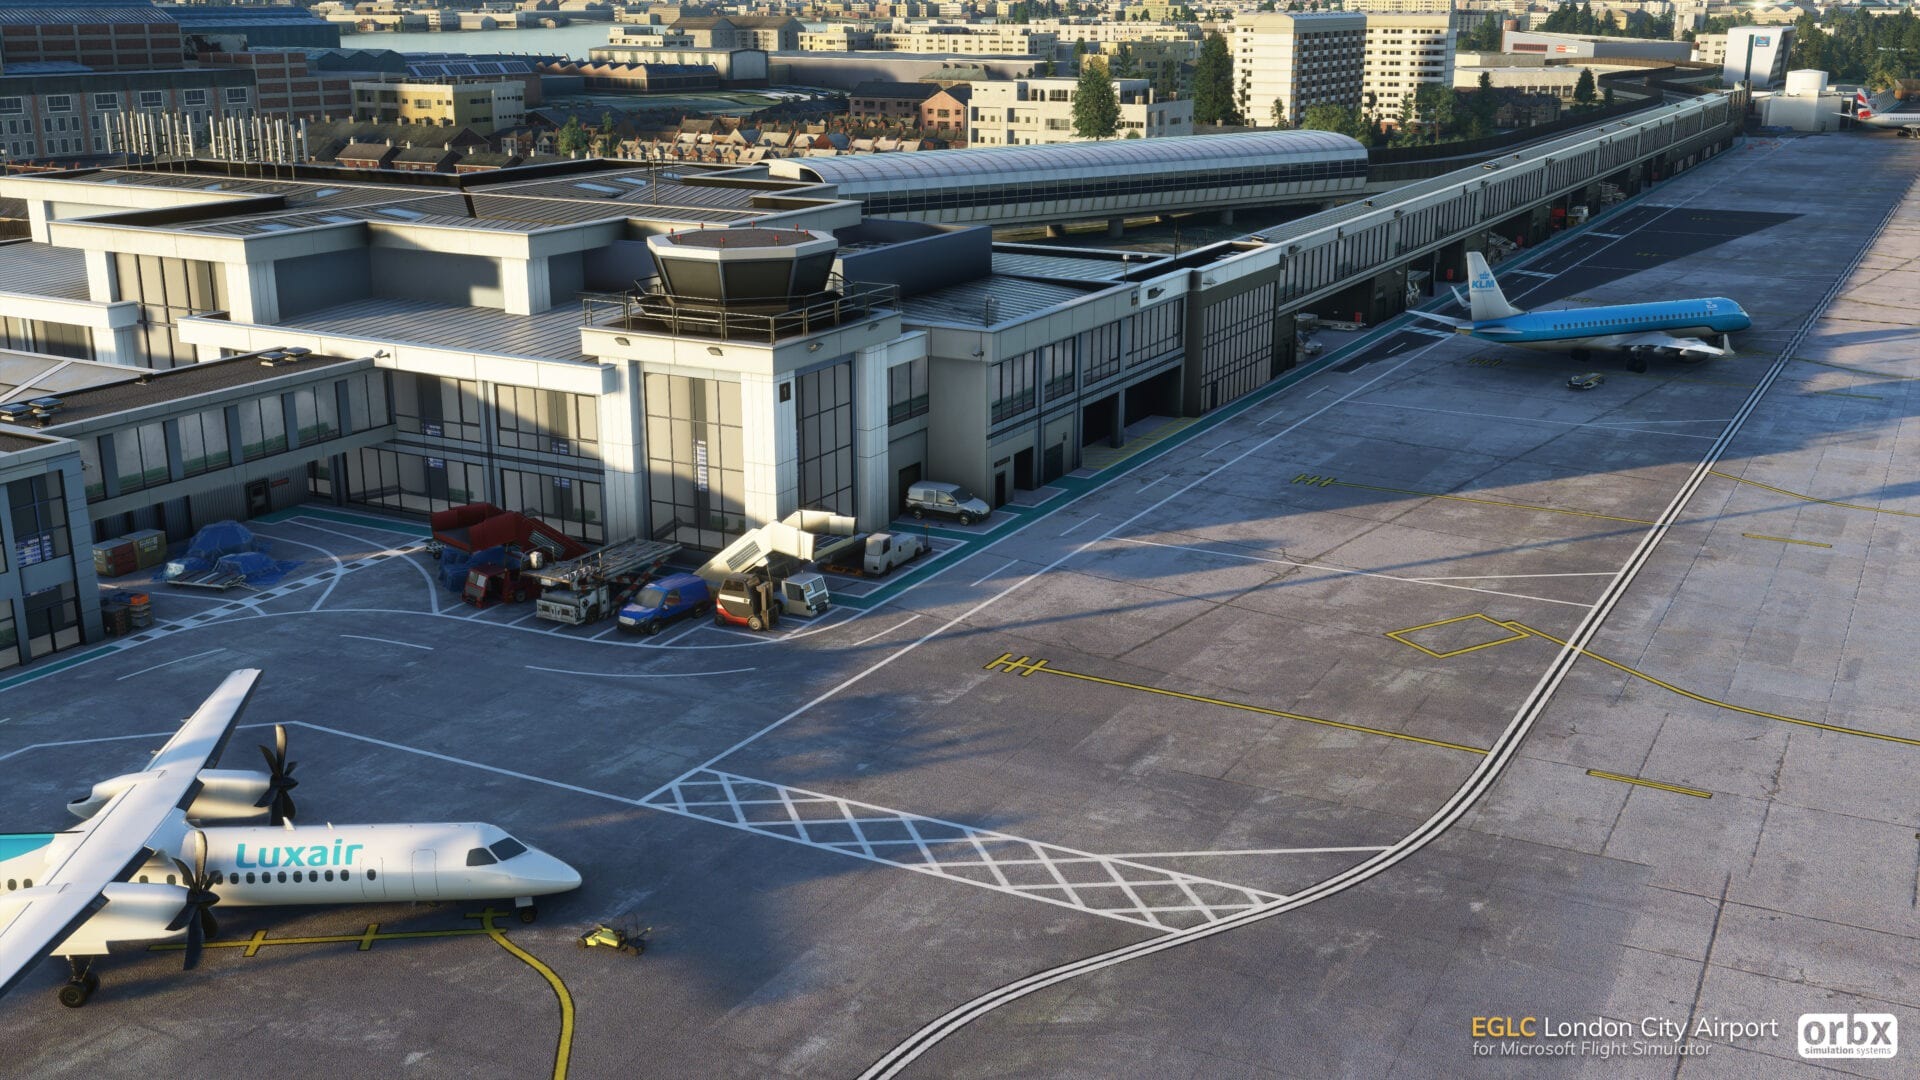 《微软飞行模拟》附加机场插件售价及截图曝光